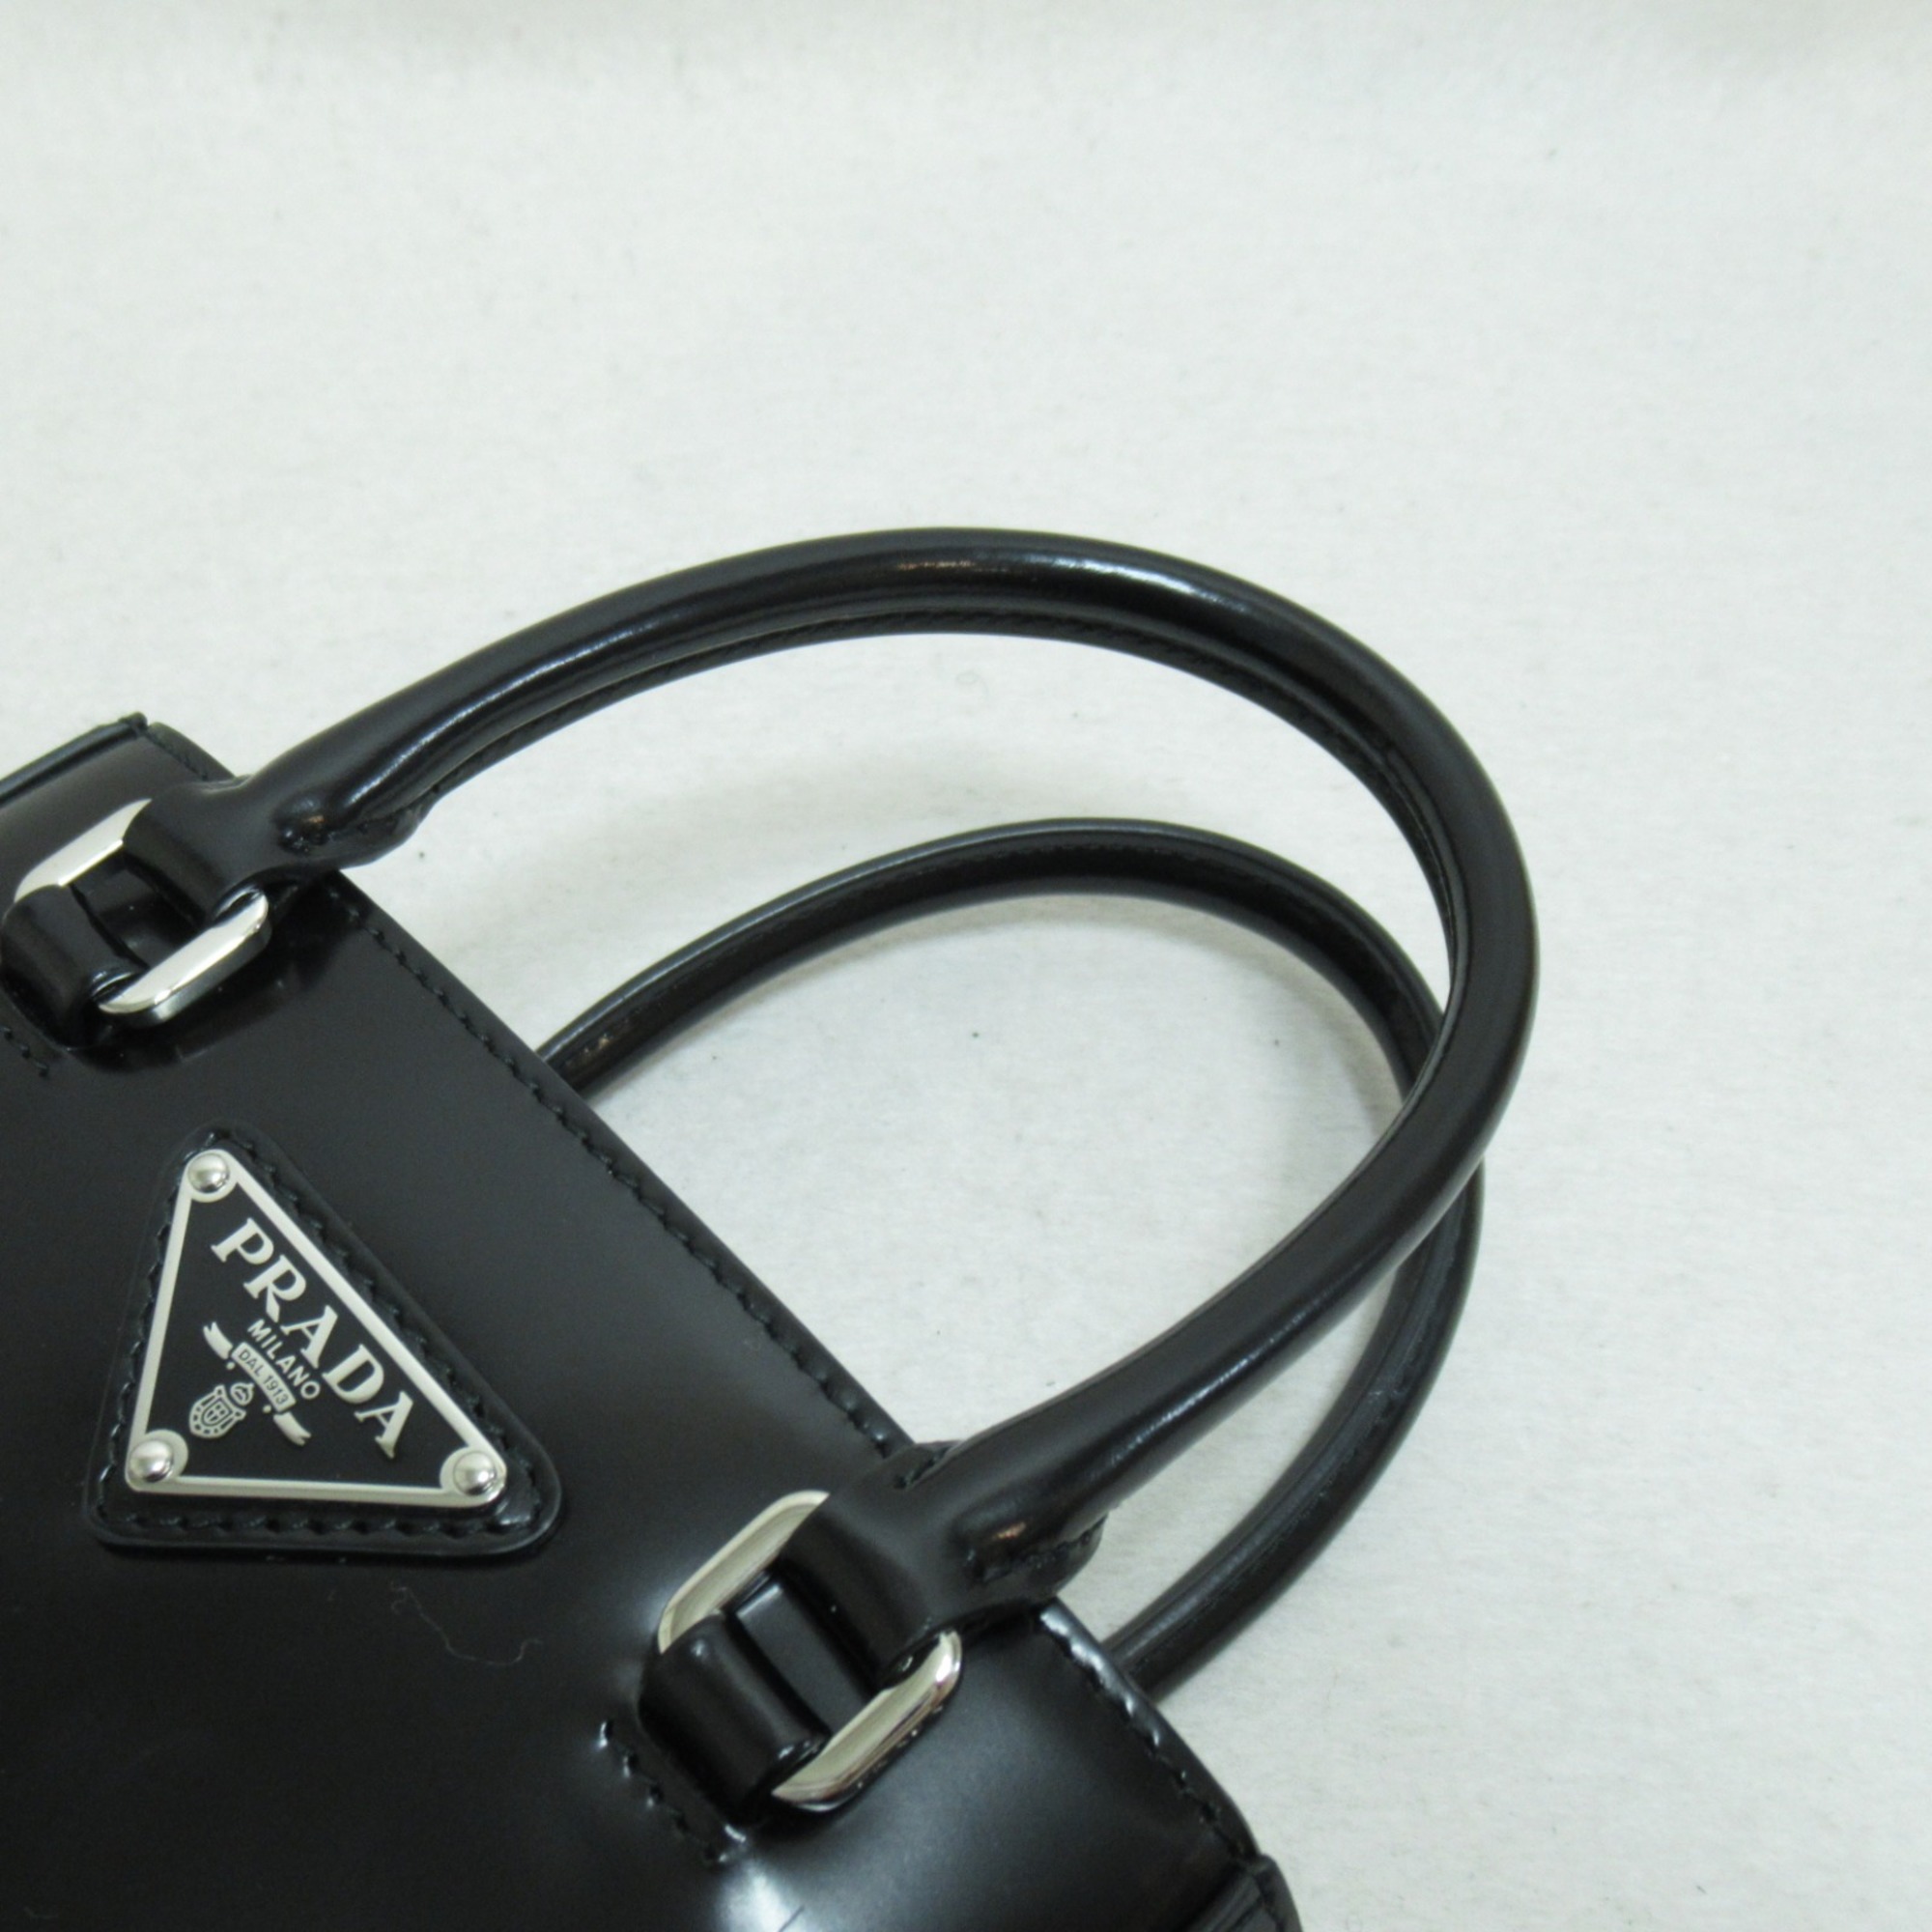 PRADA Shoulder Bag Black leather